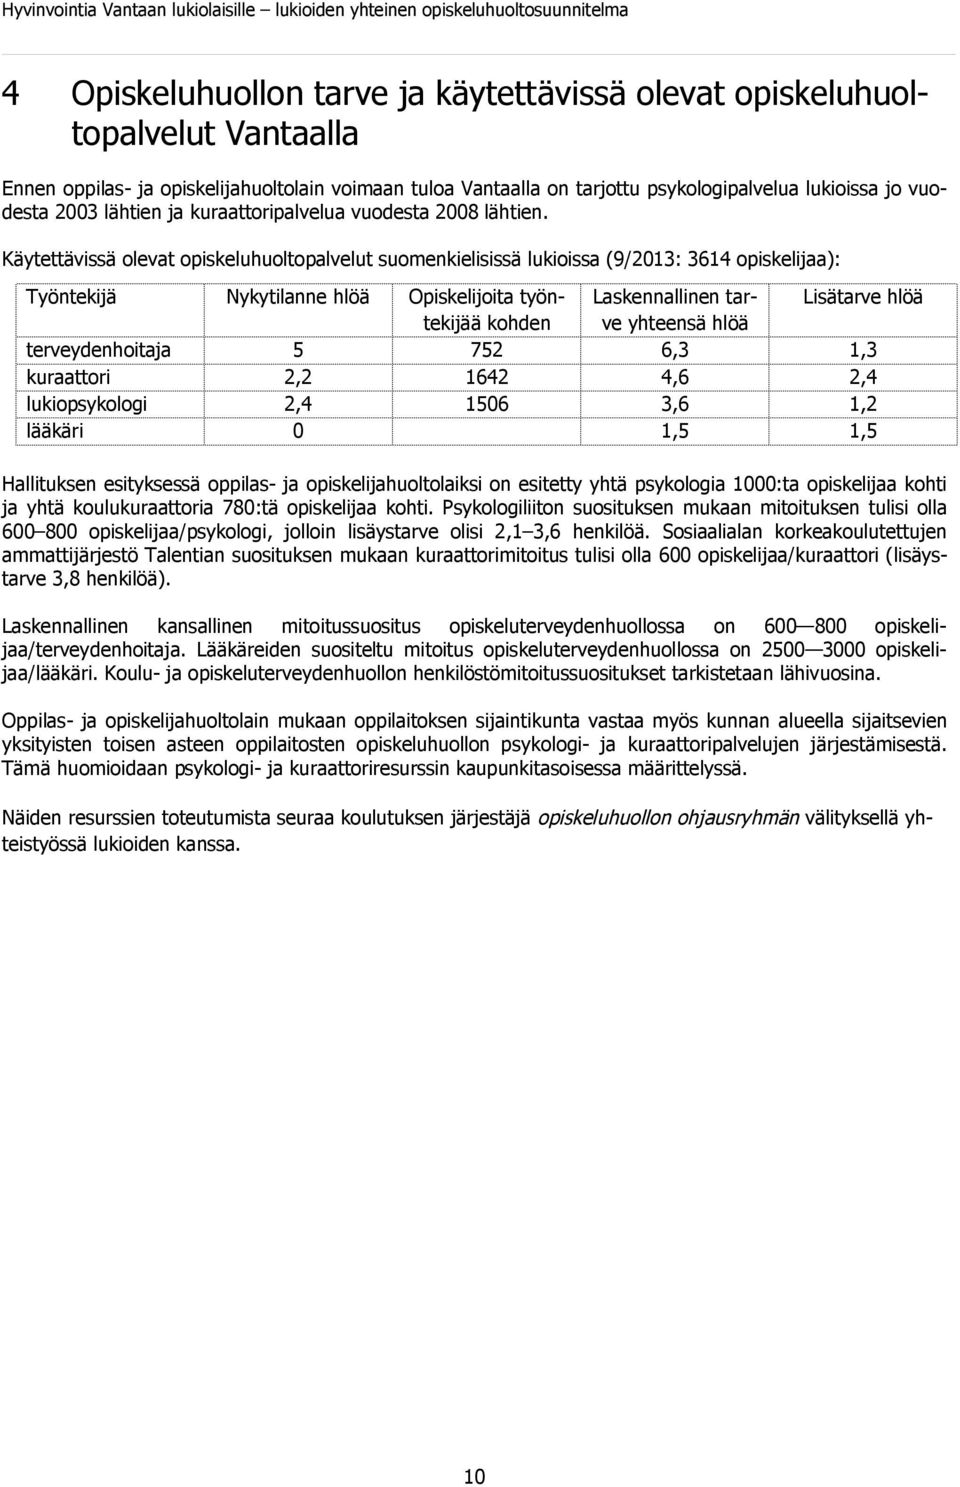 Käytettävissä olevat opiskeluhuoltopalvelut suomenkielisissä lukioissa (9/2013: 3614 opiskelijaa): Työntekijä Nykytilanne hlöä Opiskelijoita työntekijää Laskennallinen tar- Lisätarve hlöä kohden ve